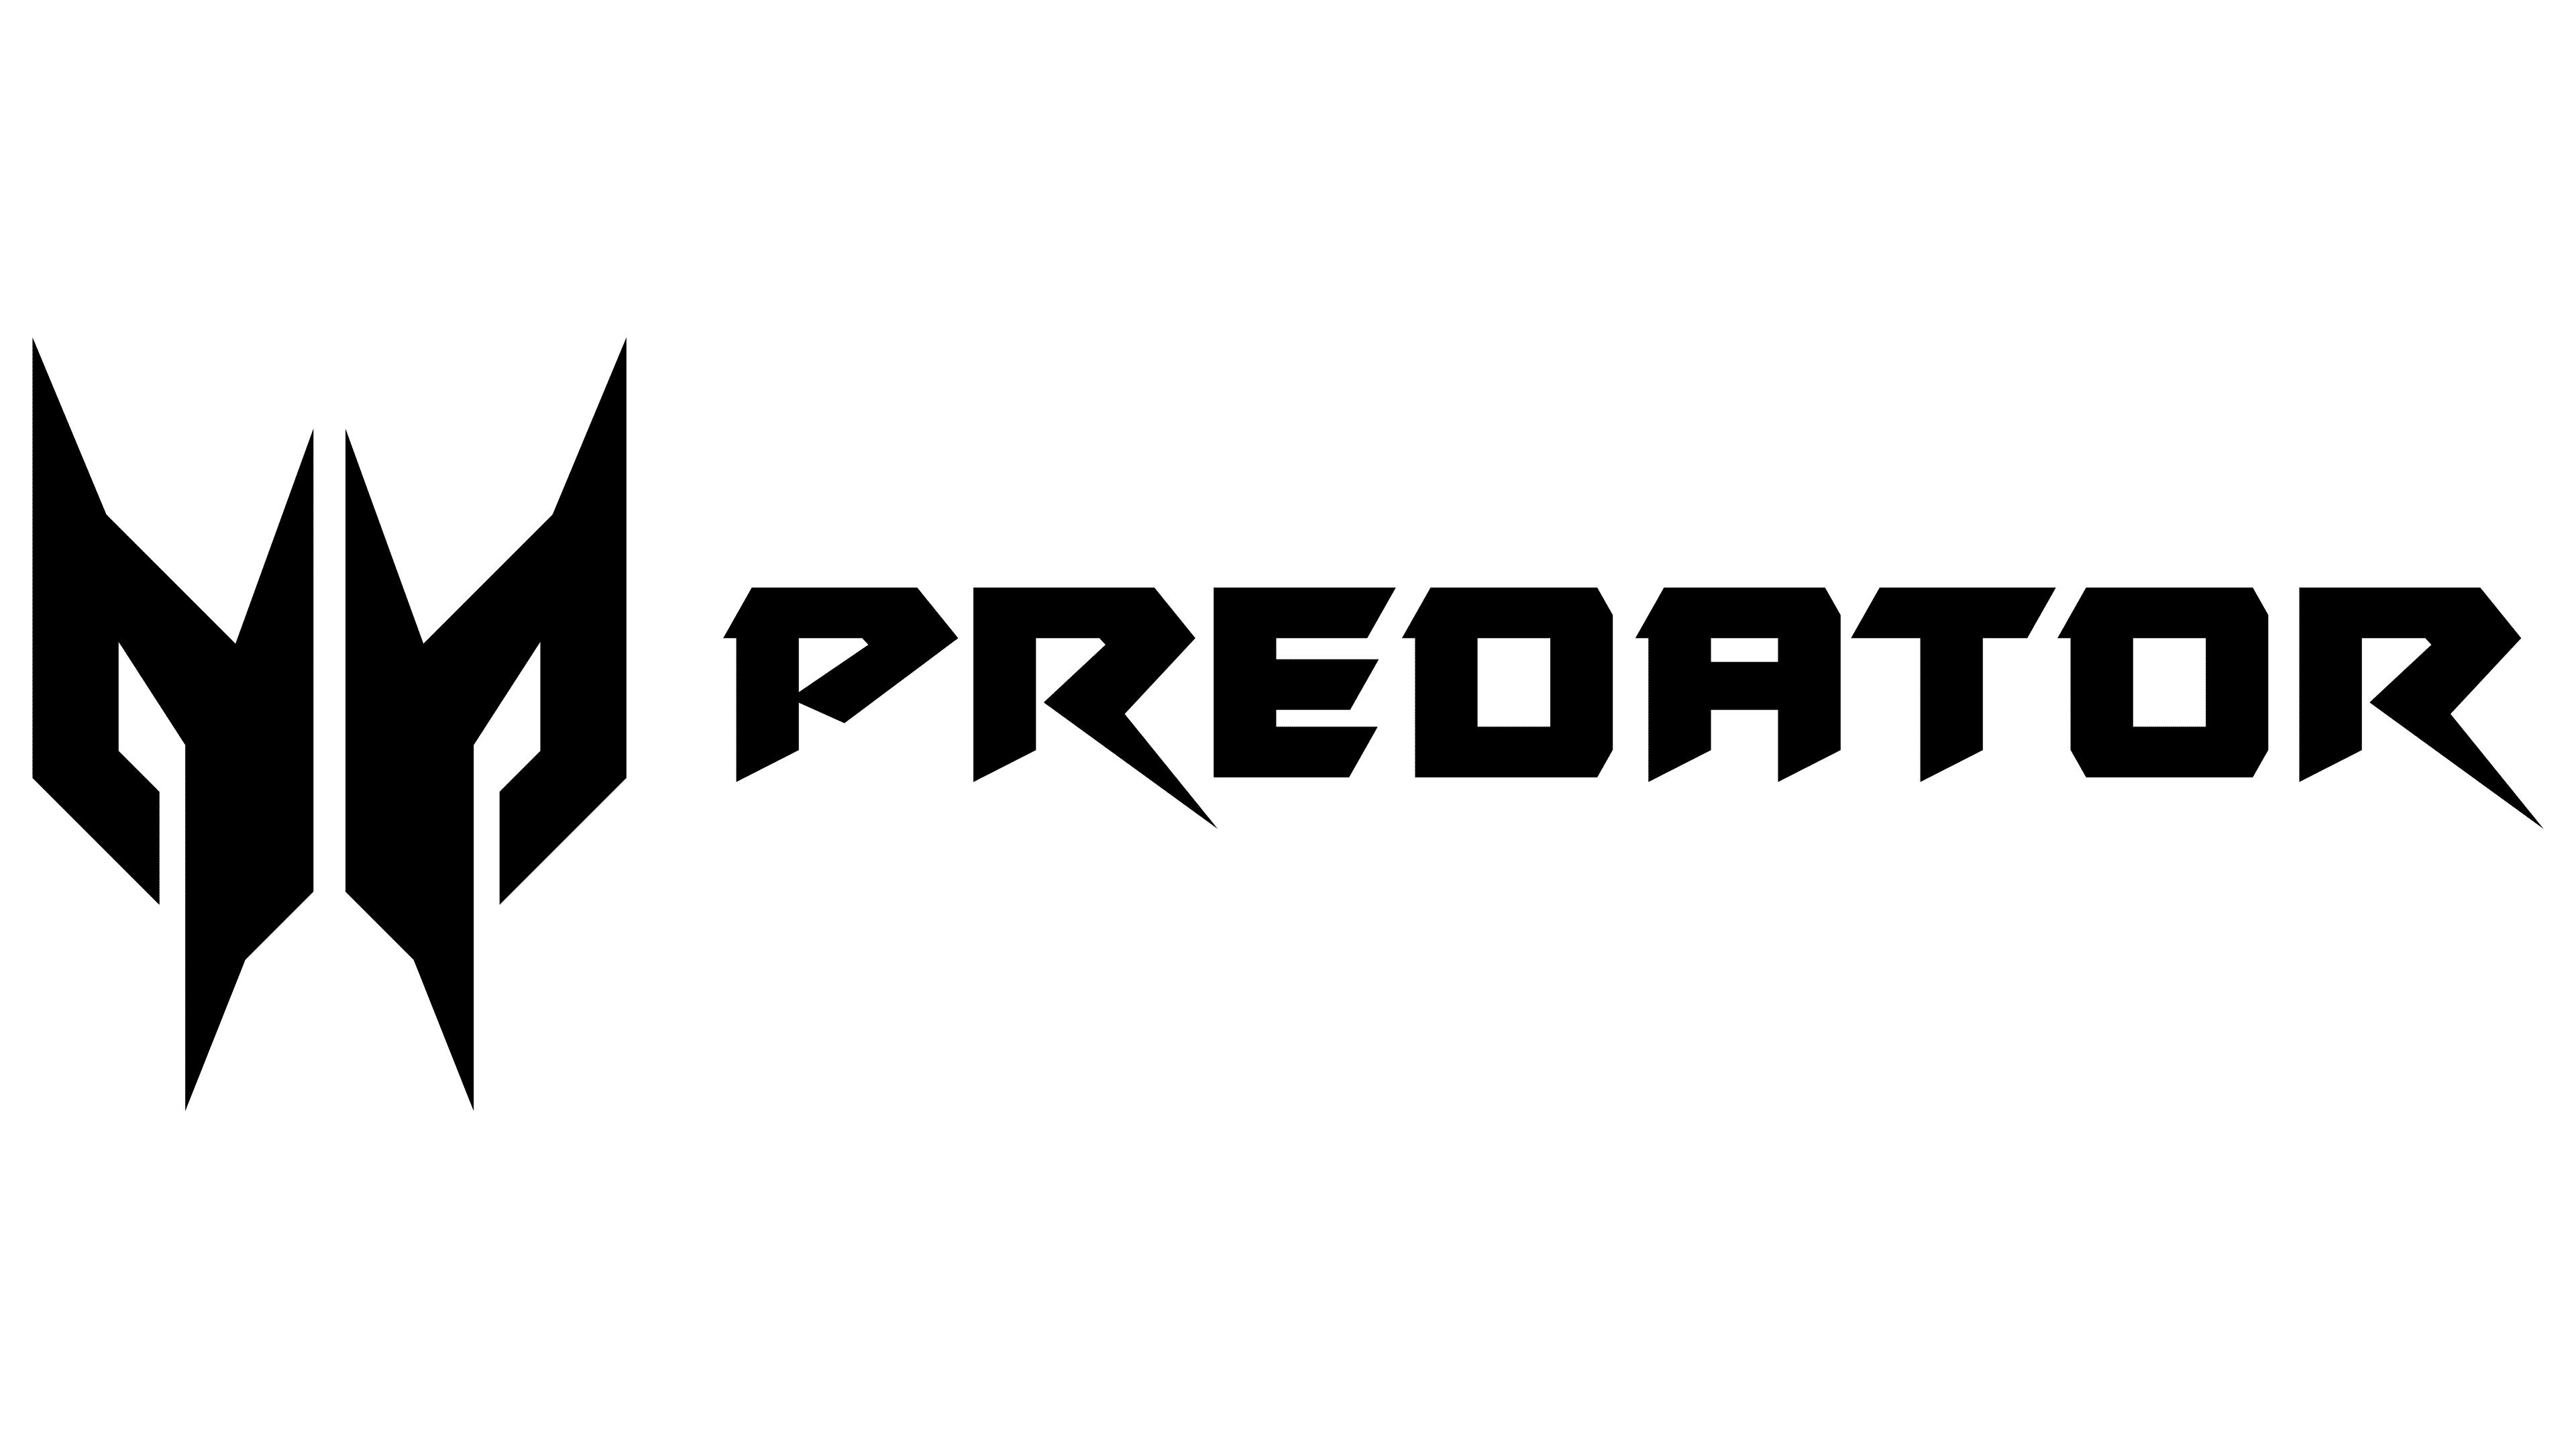 Acer Predator Logo - PNG Logo Vector Brand Downloads (SVG, EPS)